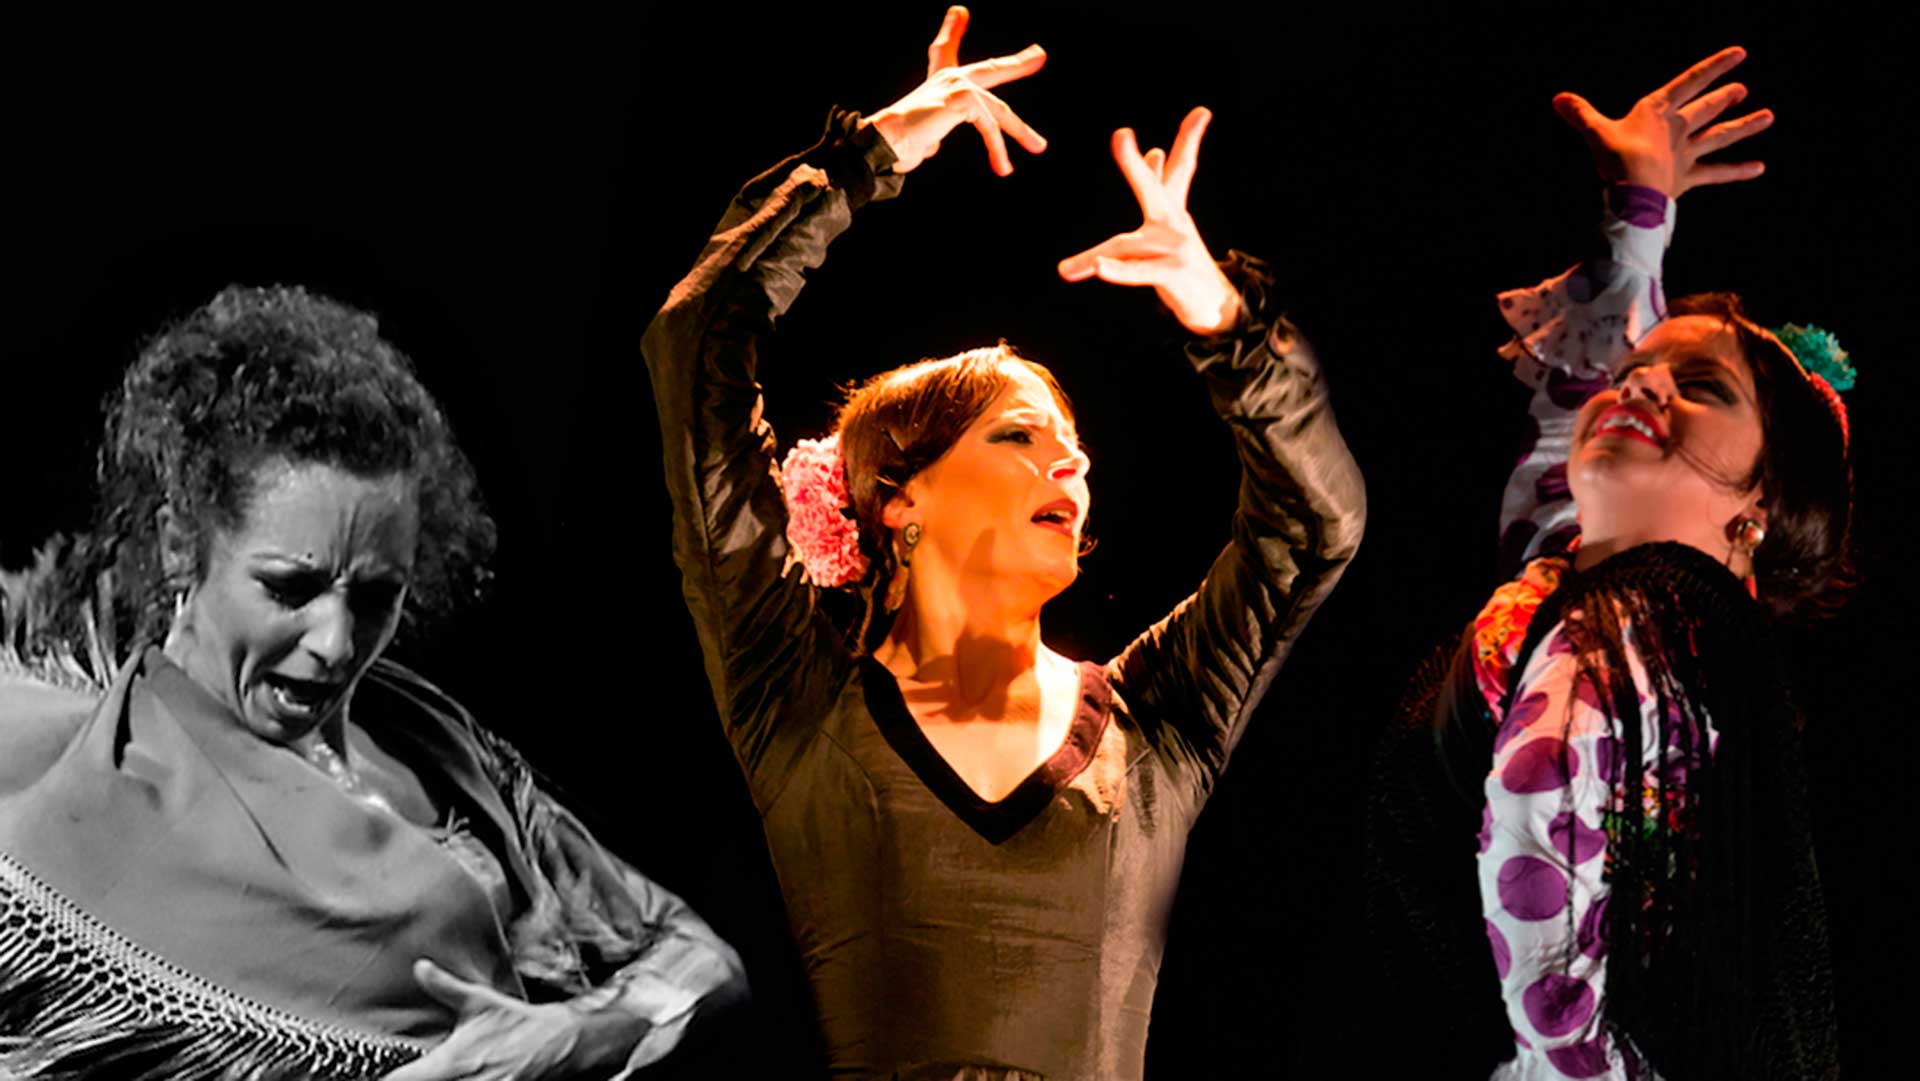 Madrid quiere batir el récord de mayor número de personas bailando flamenco a la vez